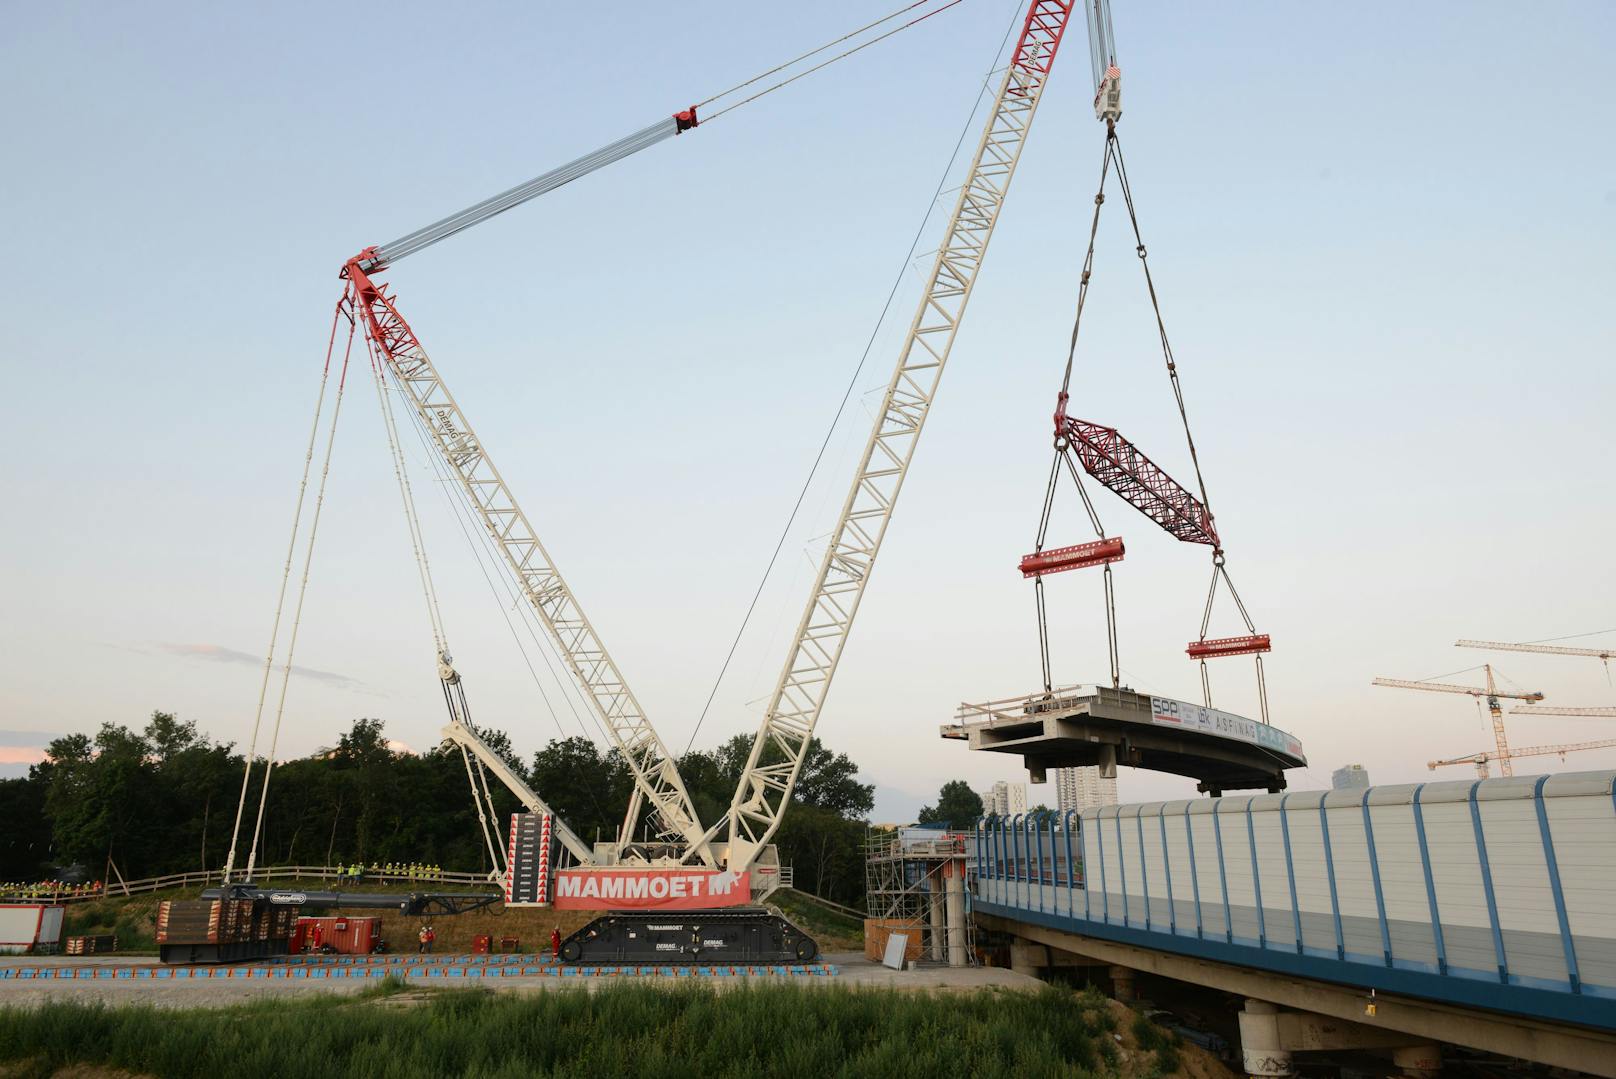 Um das 43 Meter lange und 550 Tonnen schwere Brückenteil auszuheben, wurde ein niederländischer Spezialkran zu Hilfe geholt.